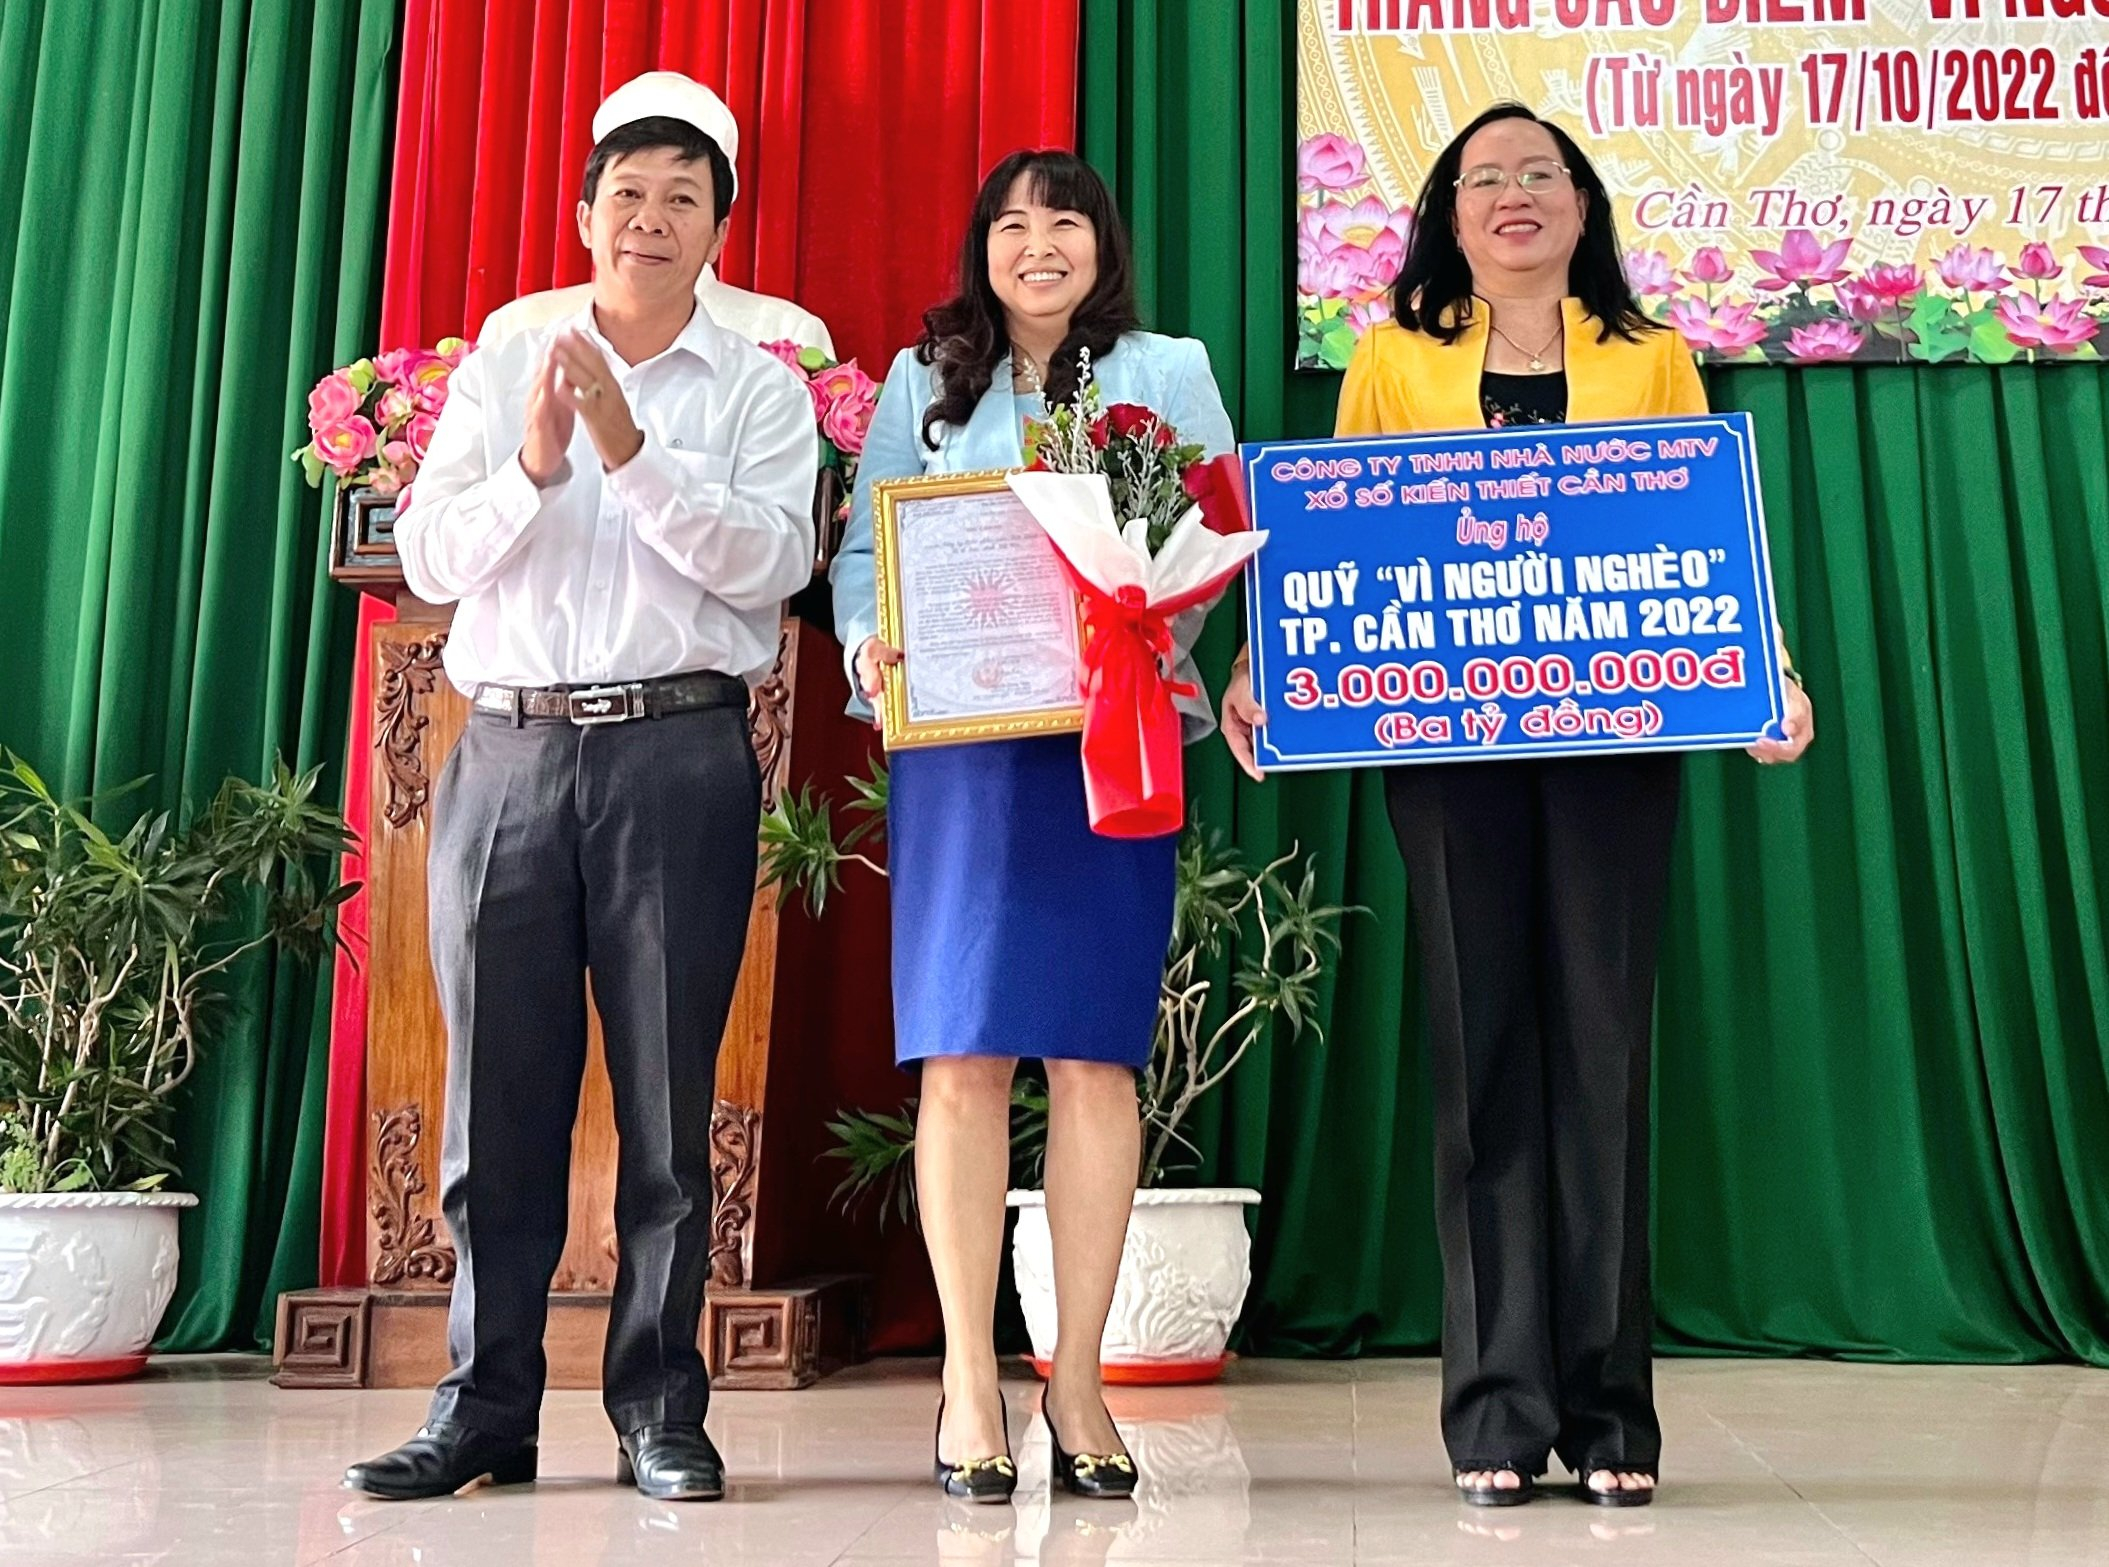 Bà Nguyễn Thị Ánh Xuân - Giám đốc Công ty TNHH Nhà nước MTV Xổ số kiến thiết Cần Thơ trao bảng ủng hộ Quỹ 'Vì người nghèo' TP. Cần Thơ số tiền 3 tỷ đồng.